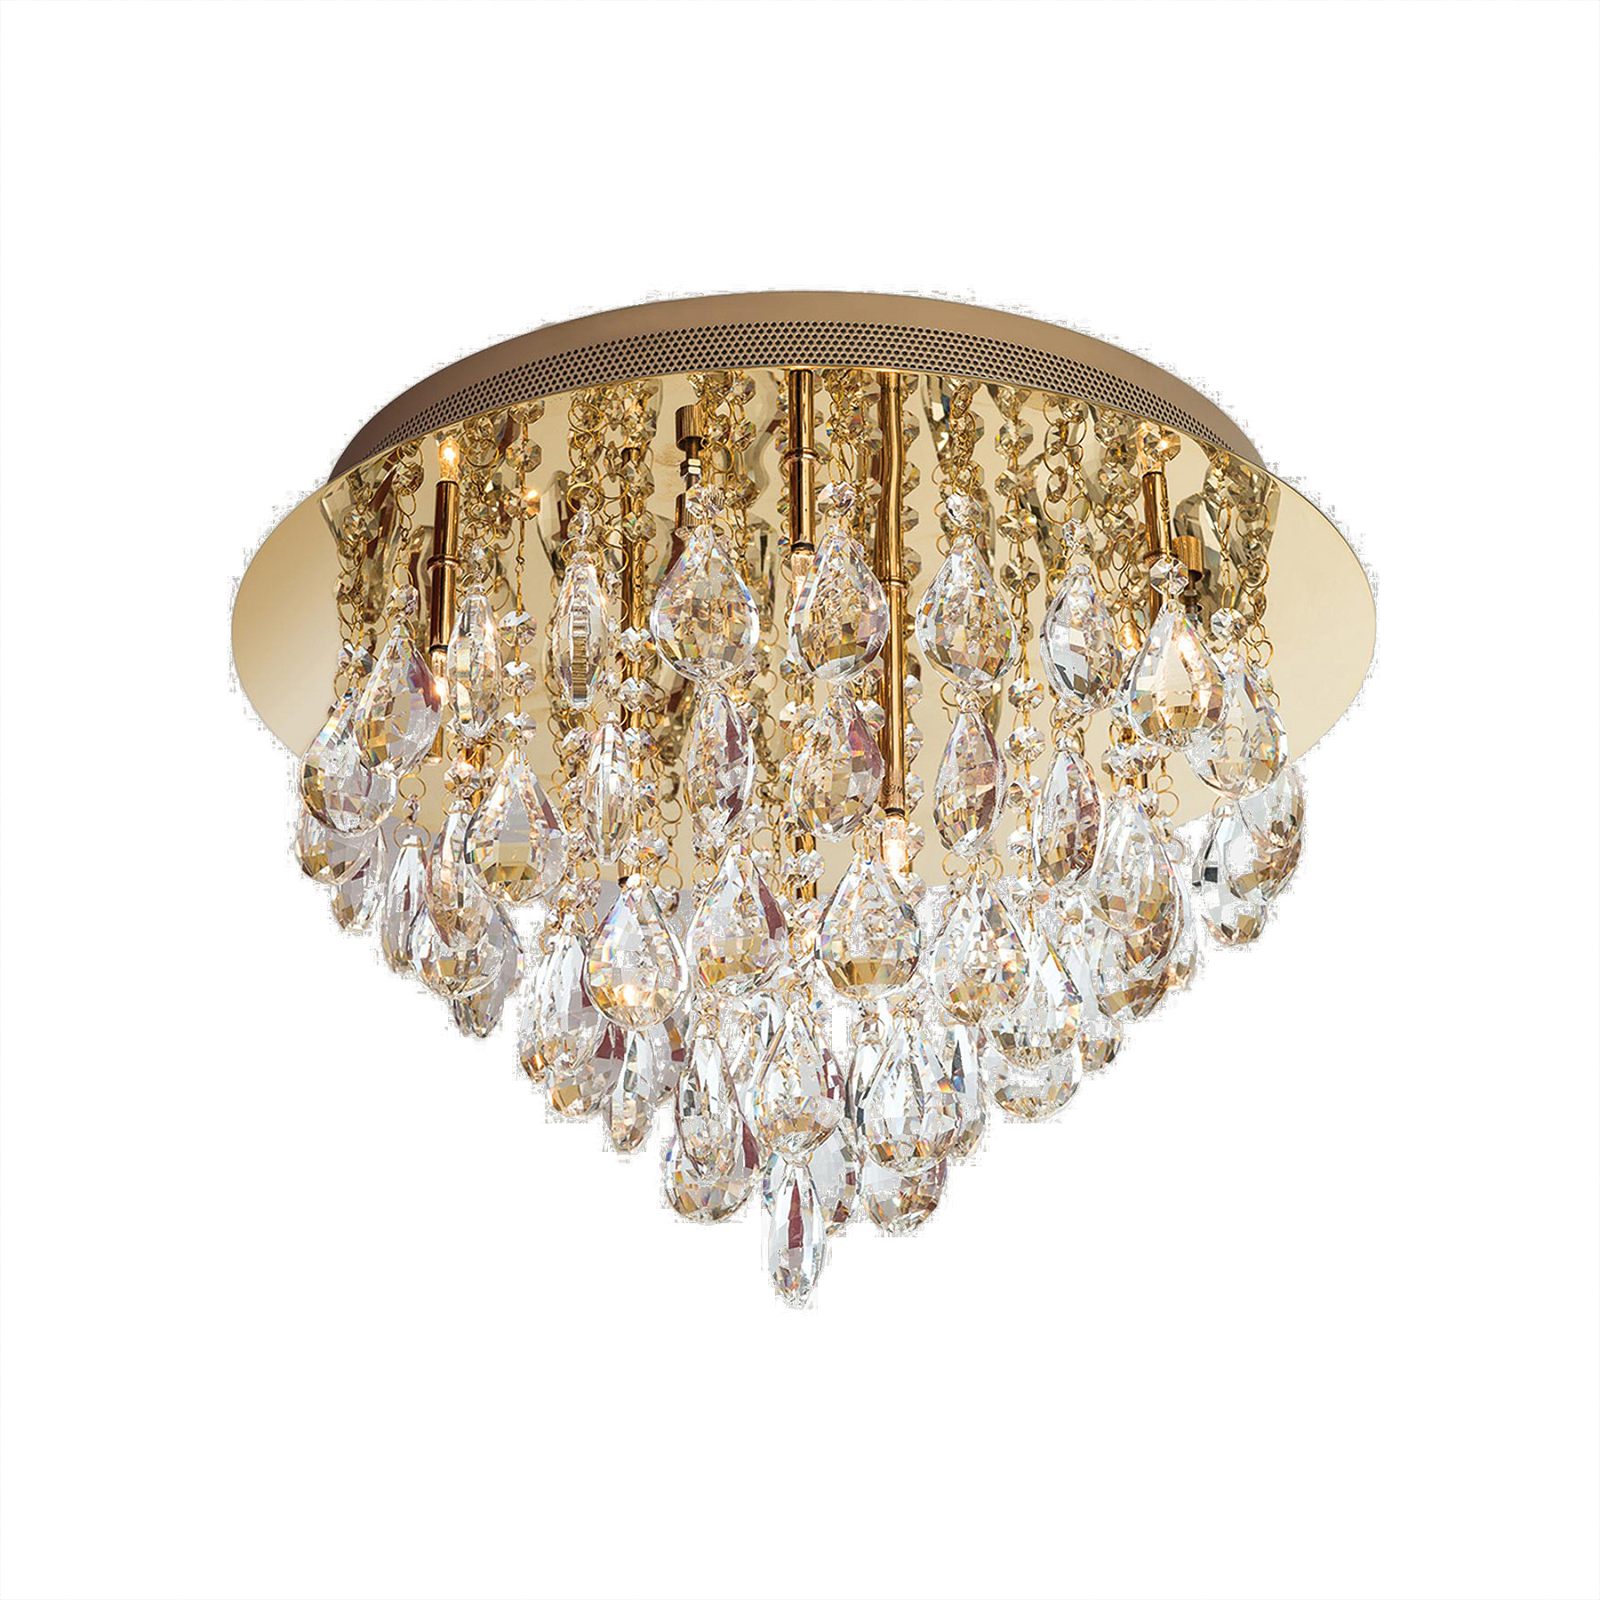 Plafondlamp Celeste met K9 kristallen, Ø45cm, goud